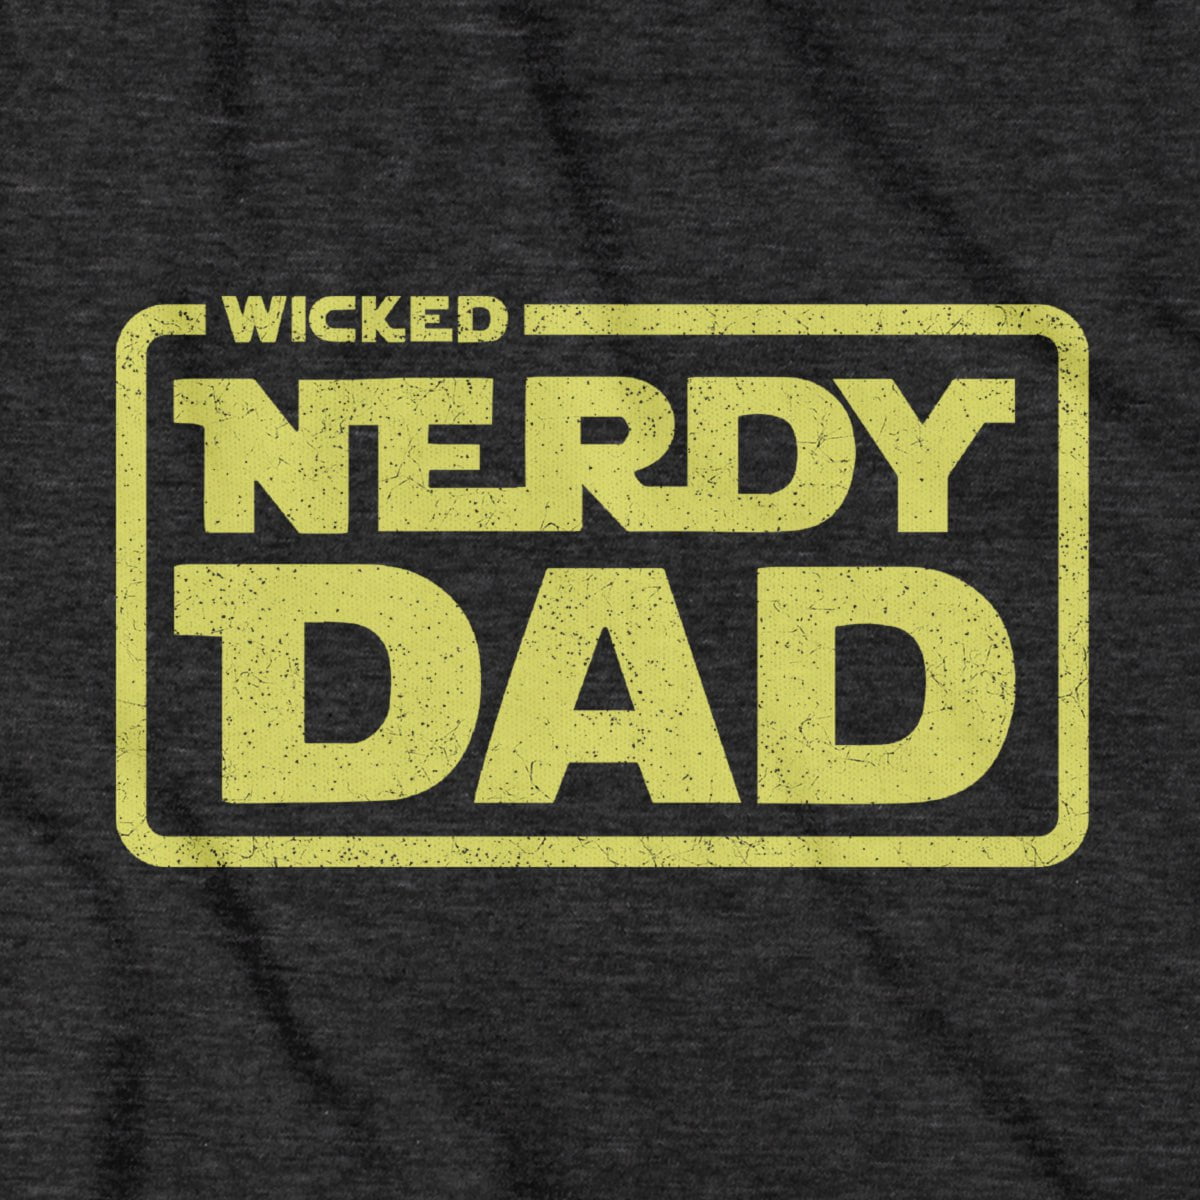 Wicked Nerdy Dad T-Shirt - Chowdaheadz